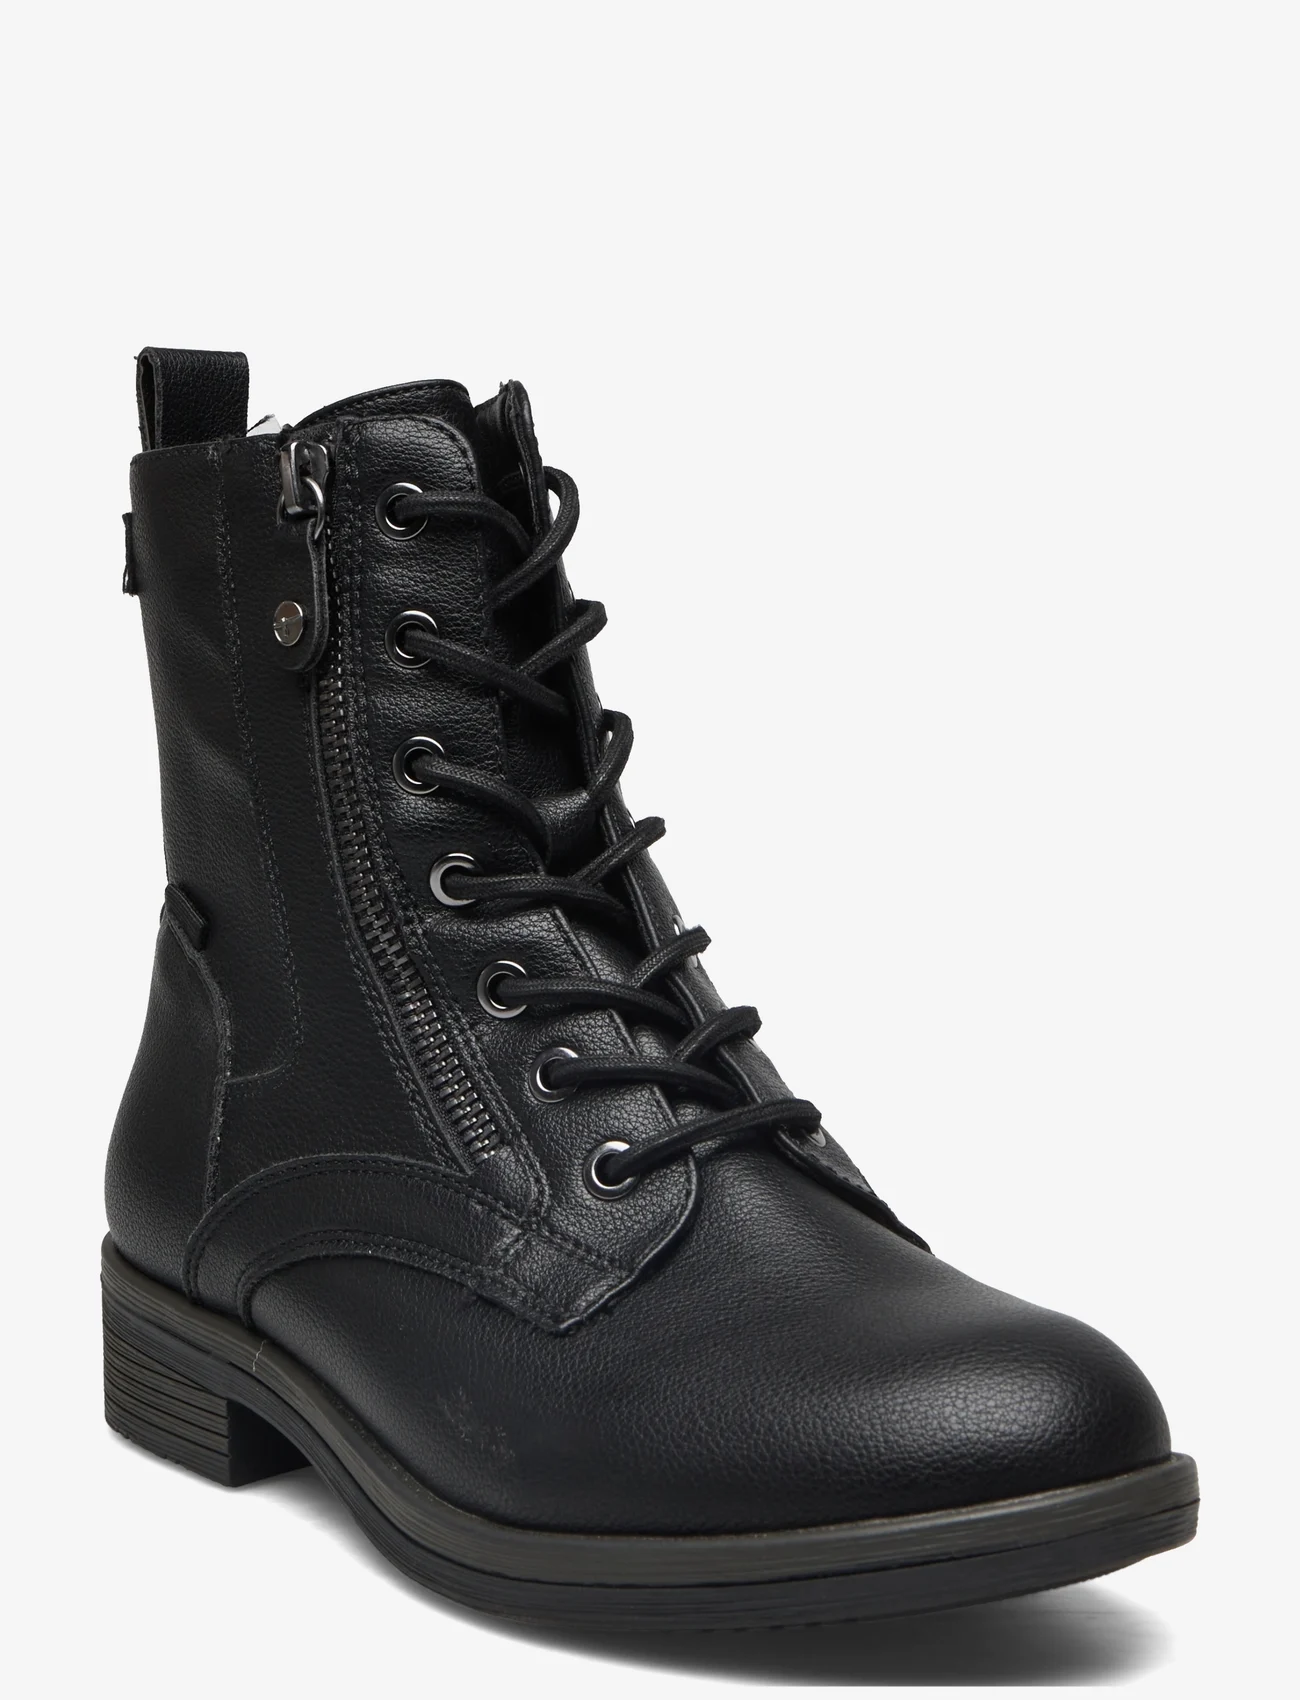 Tamaris - Women Boots - veterlaarzen - black - 0